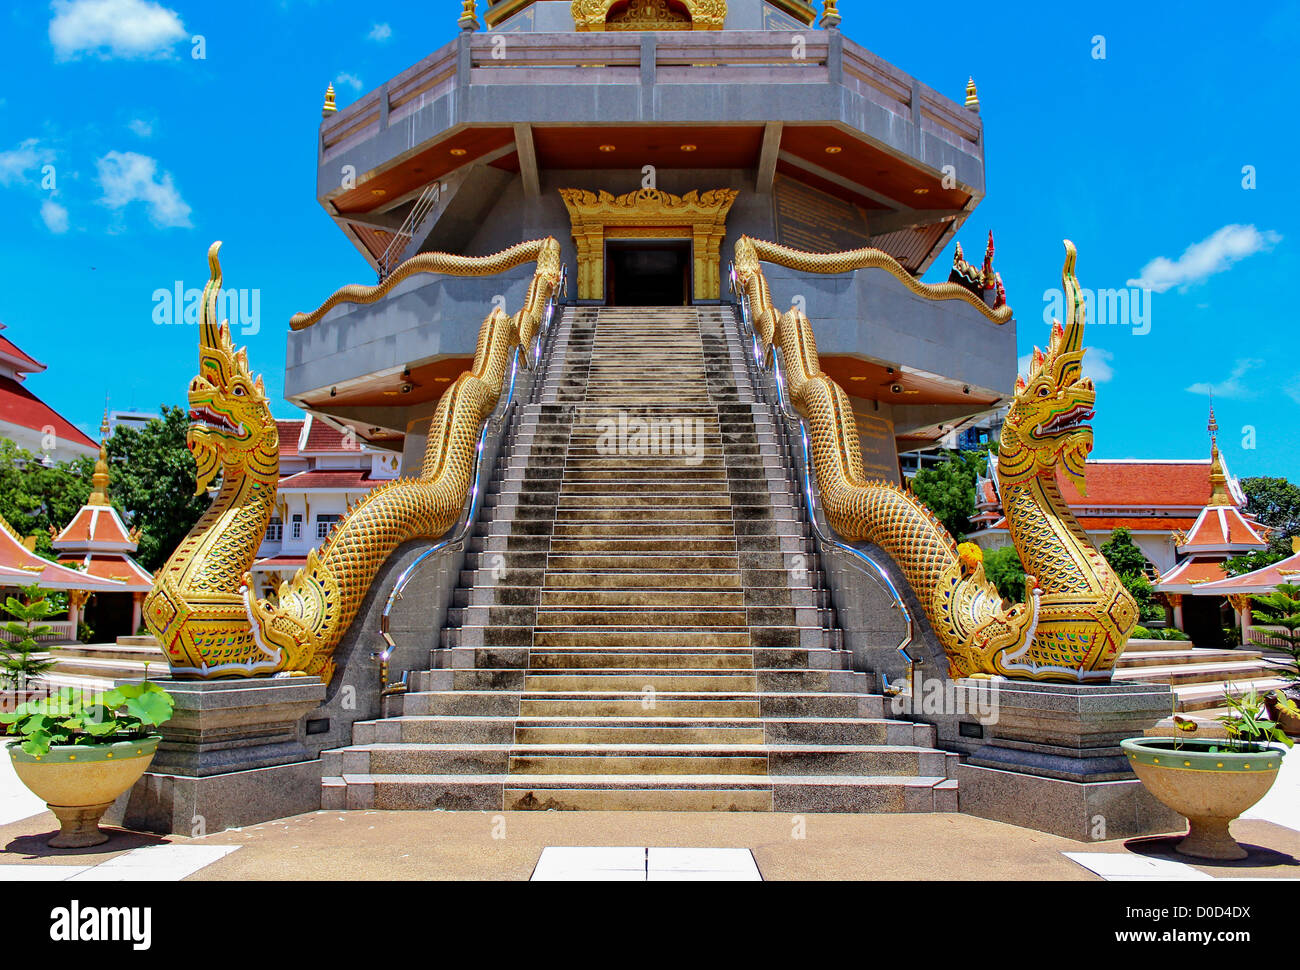 Thailändische Kunst, Naka-Statue auf Treppe Geländer am thailändischen buddhistischen Pagode, Udornthani Provinz, Nordosten, Thailand Stockfoto